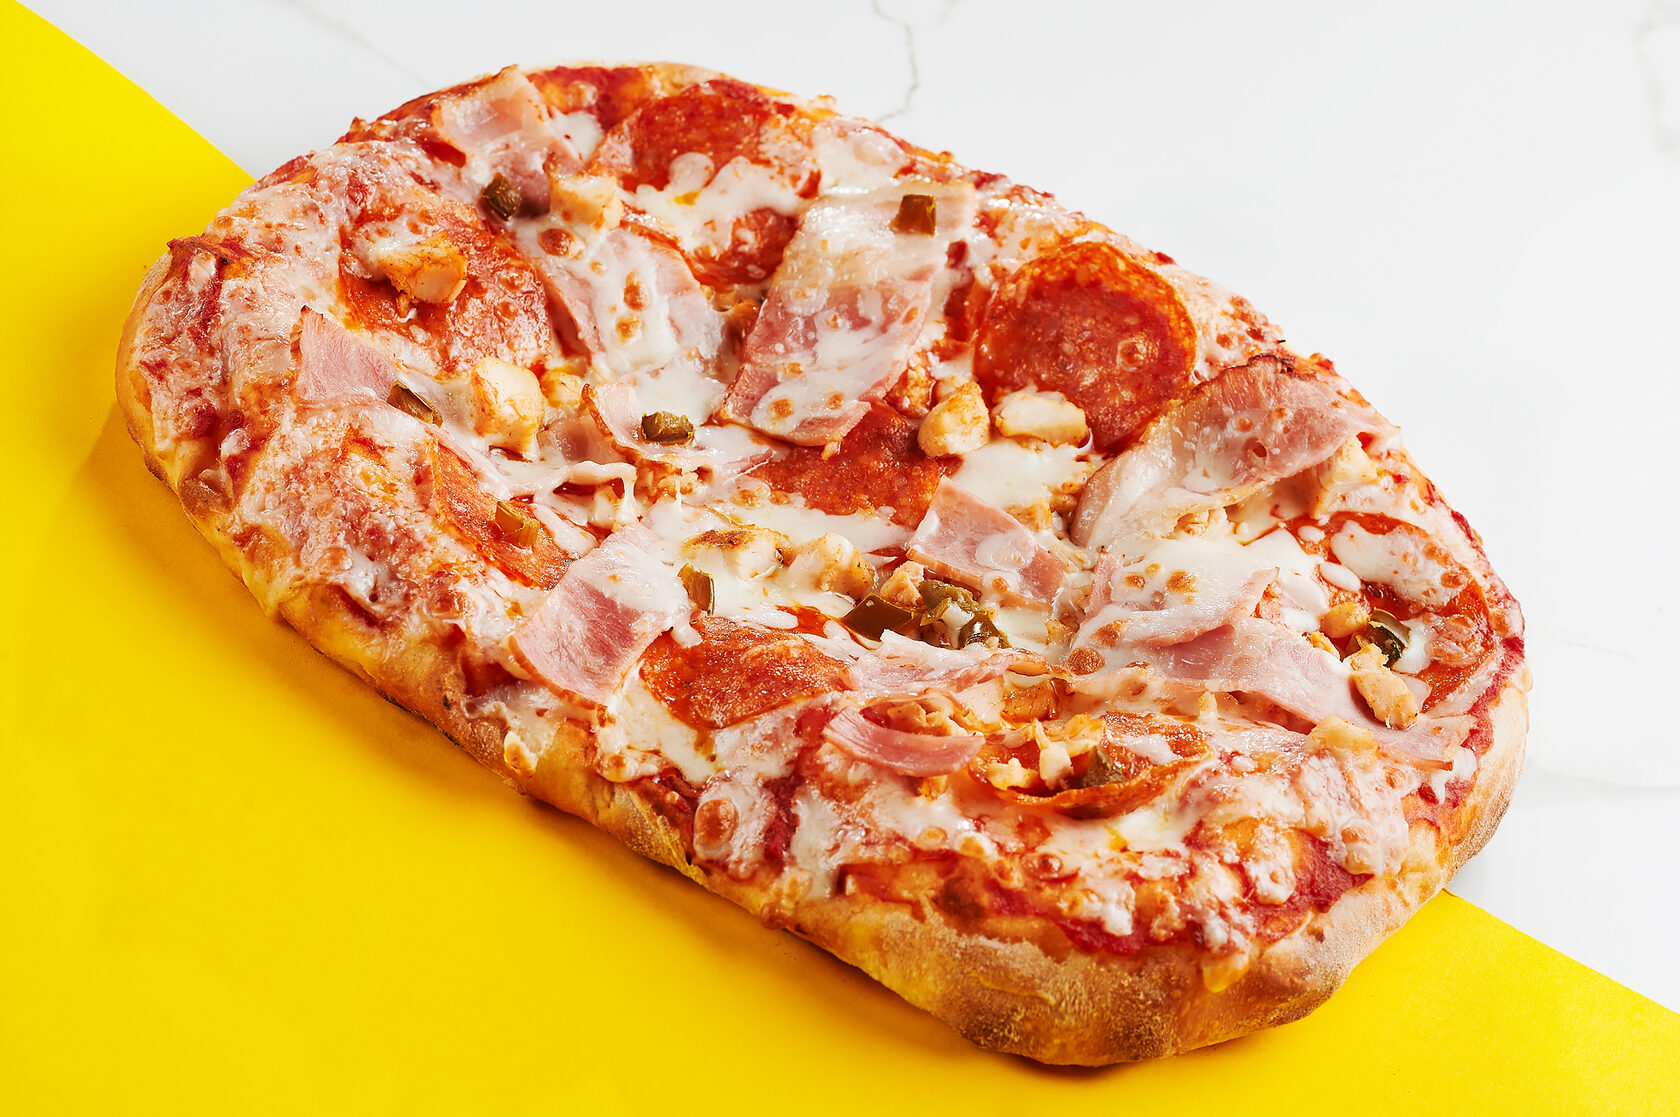 сколько калорий в куске пиццы пепперони из додо фото 97